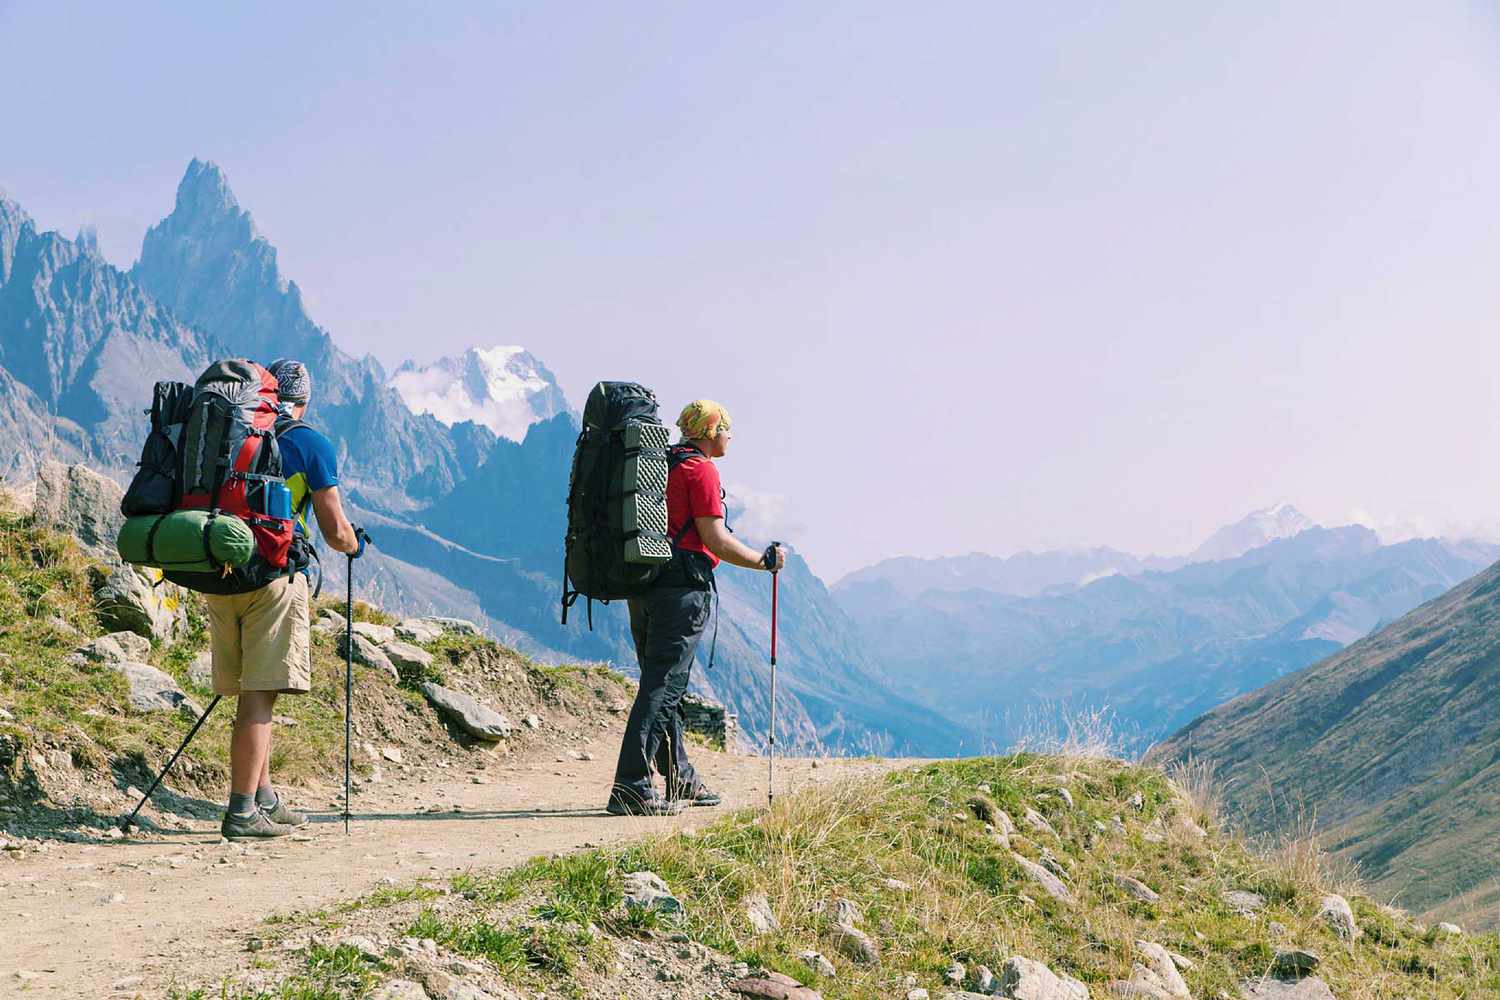 Le Tour du Mont Blanc est une randonnée unique d'environ 200 km autour du Mont Blanc qui peut être complétée en 7 à 10 jours en passant par l'Italie, la Suisse et la France.